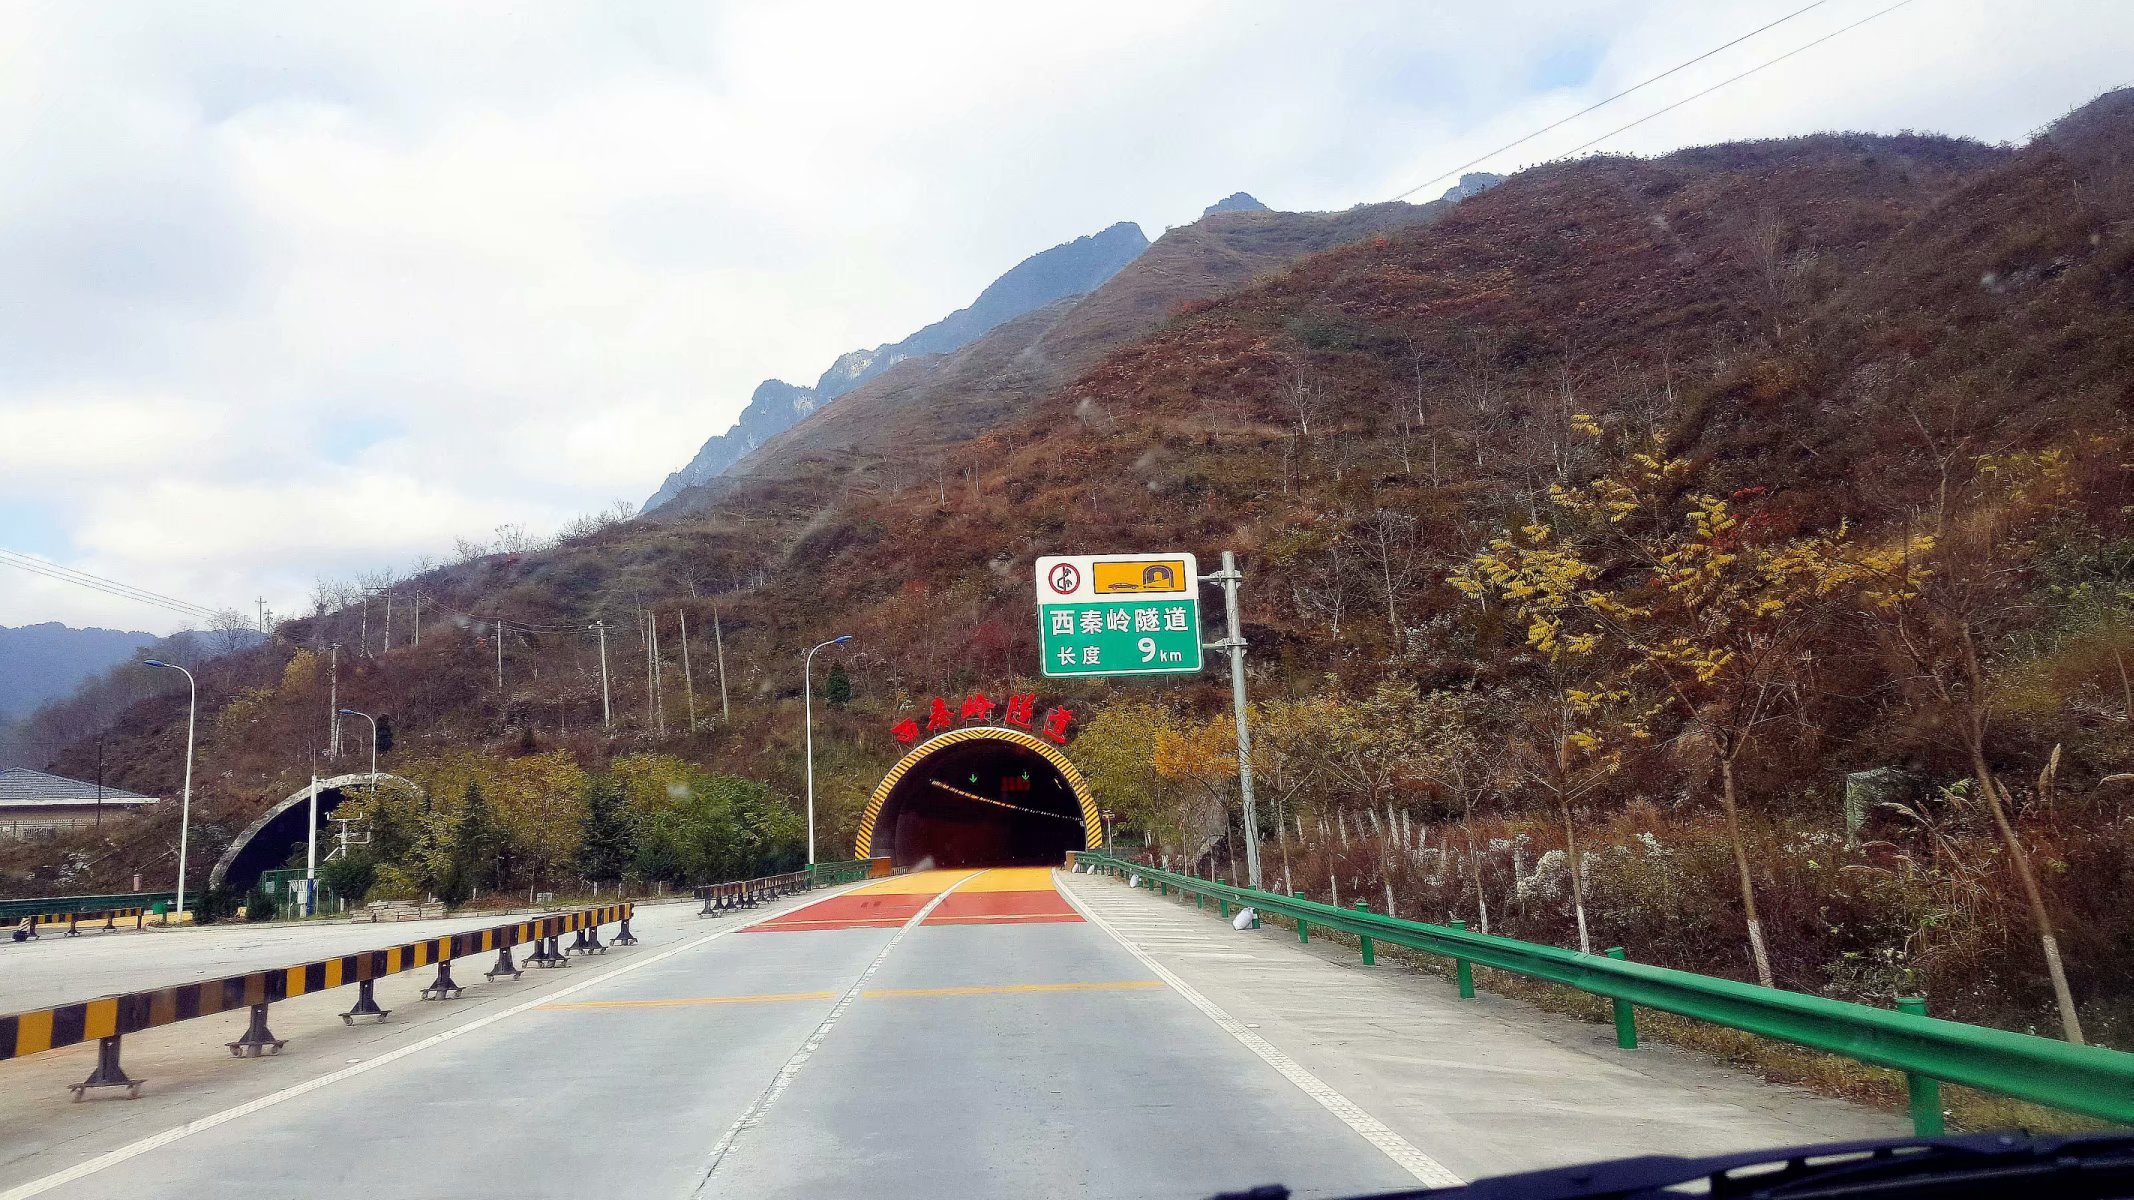 前方西秦岭隧道,秦岭是南北地理的分界线,穿过去的景观就不一样了